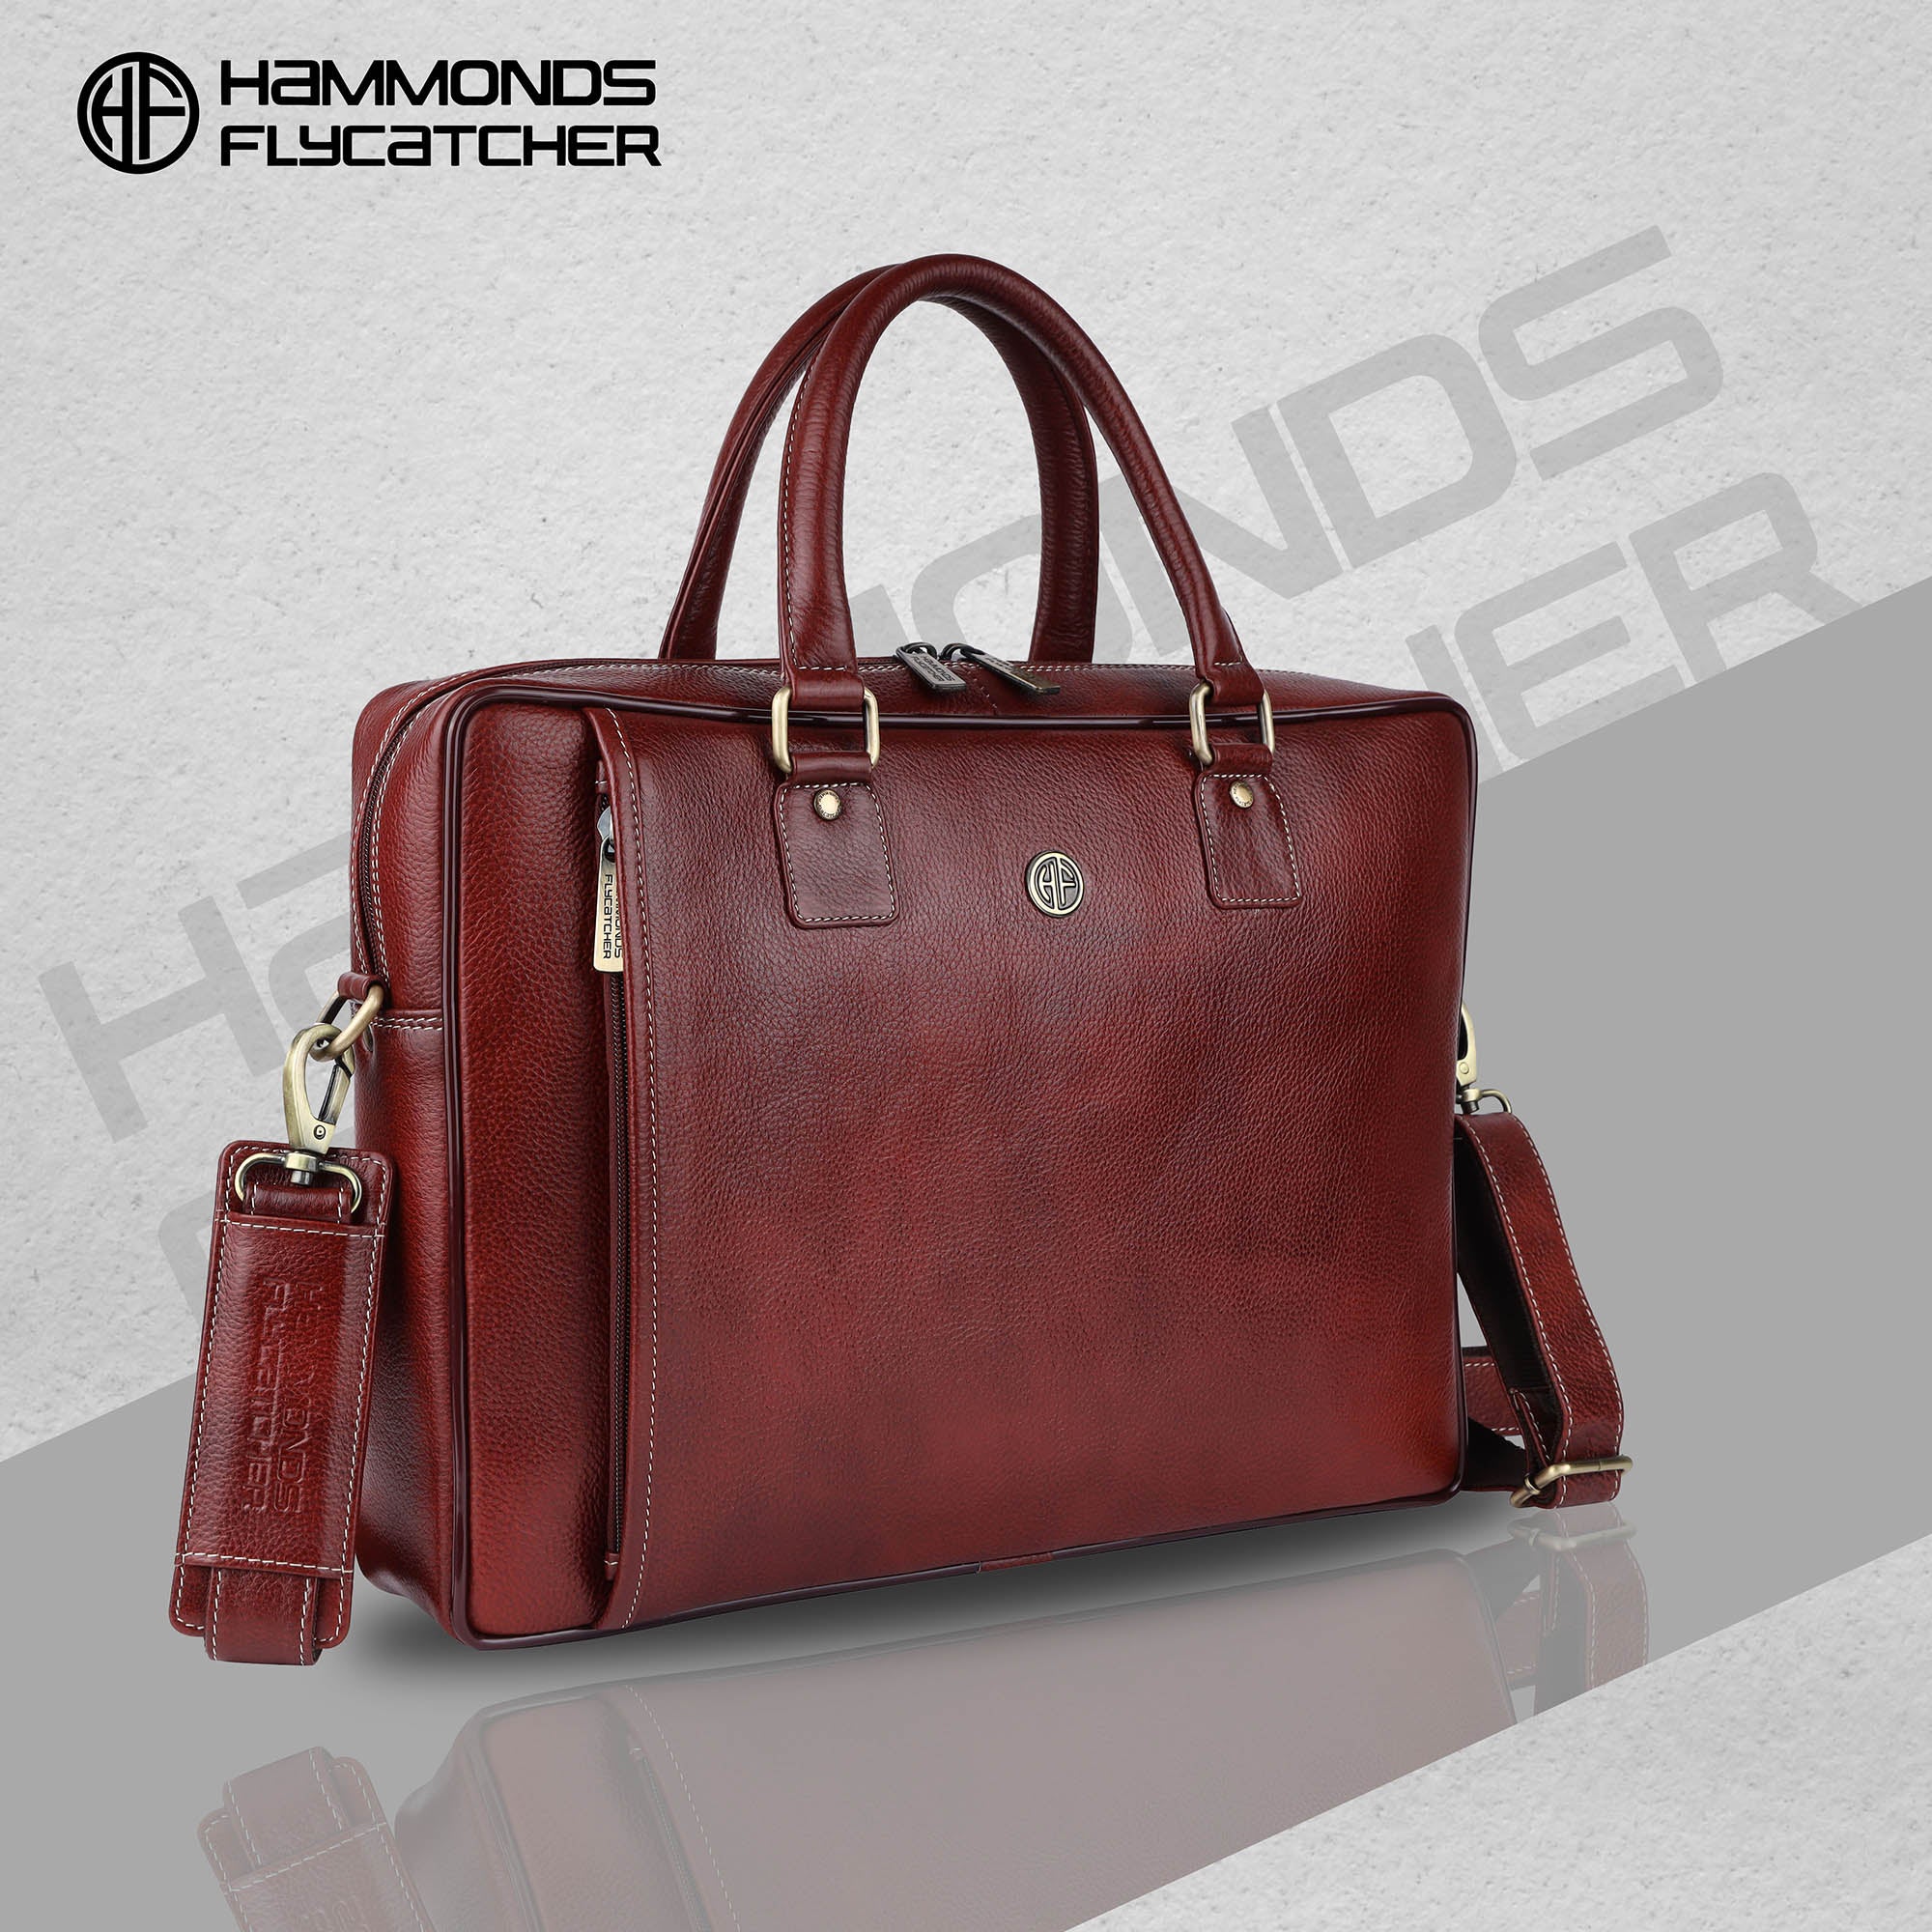 HAMMONDS FLYCATCHER Genuine Leather Laptop Bag for Men - Office Bag, Brushwood - Fits Up to 16 Inch Laptop/MacBook - Shoulder